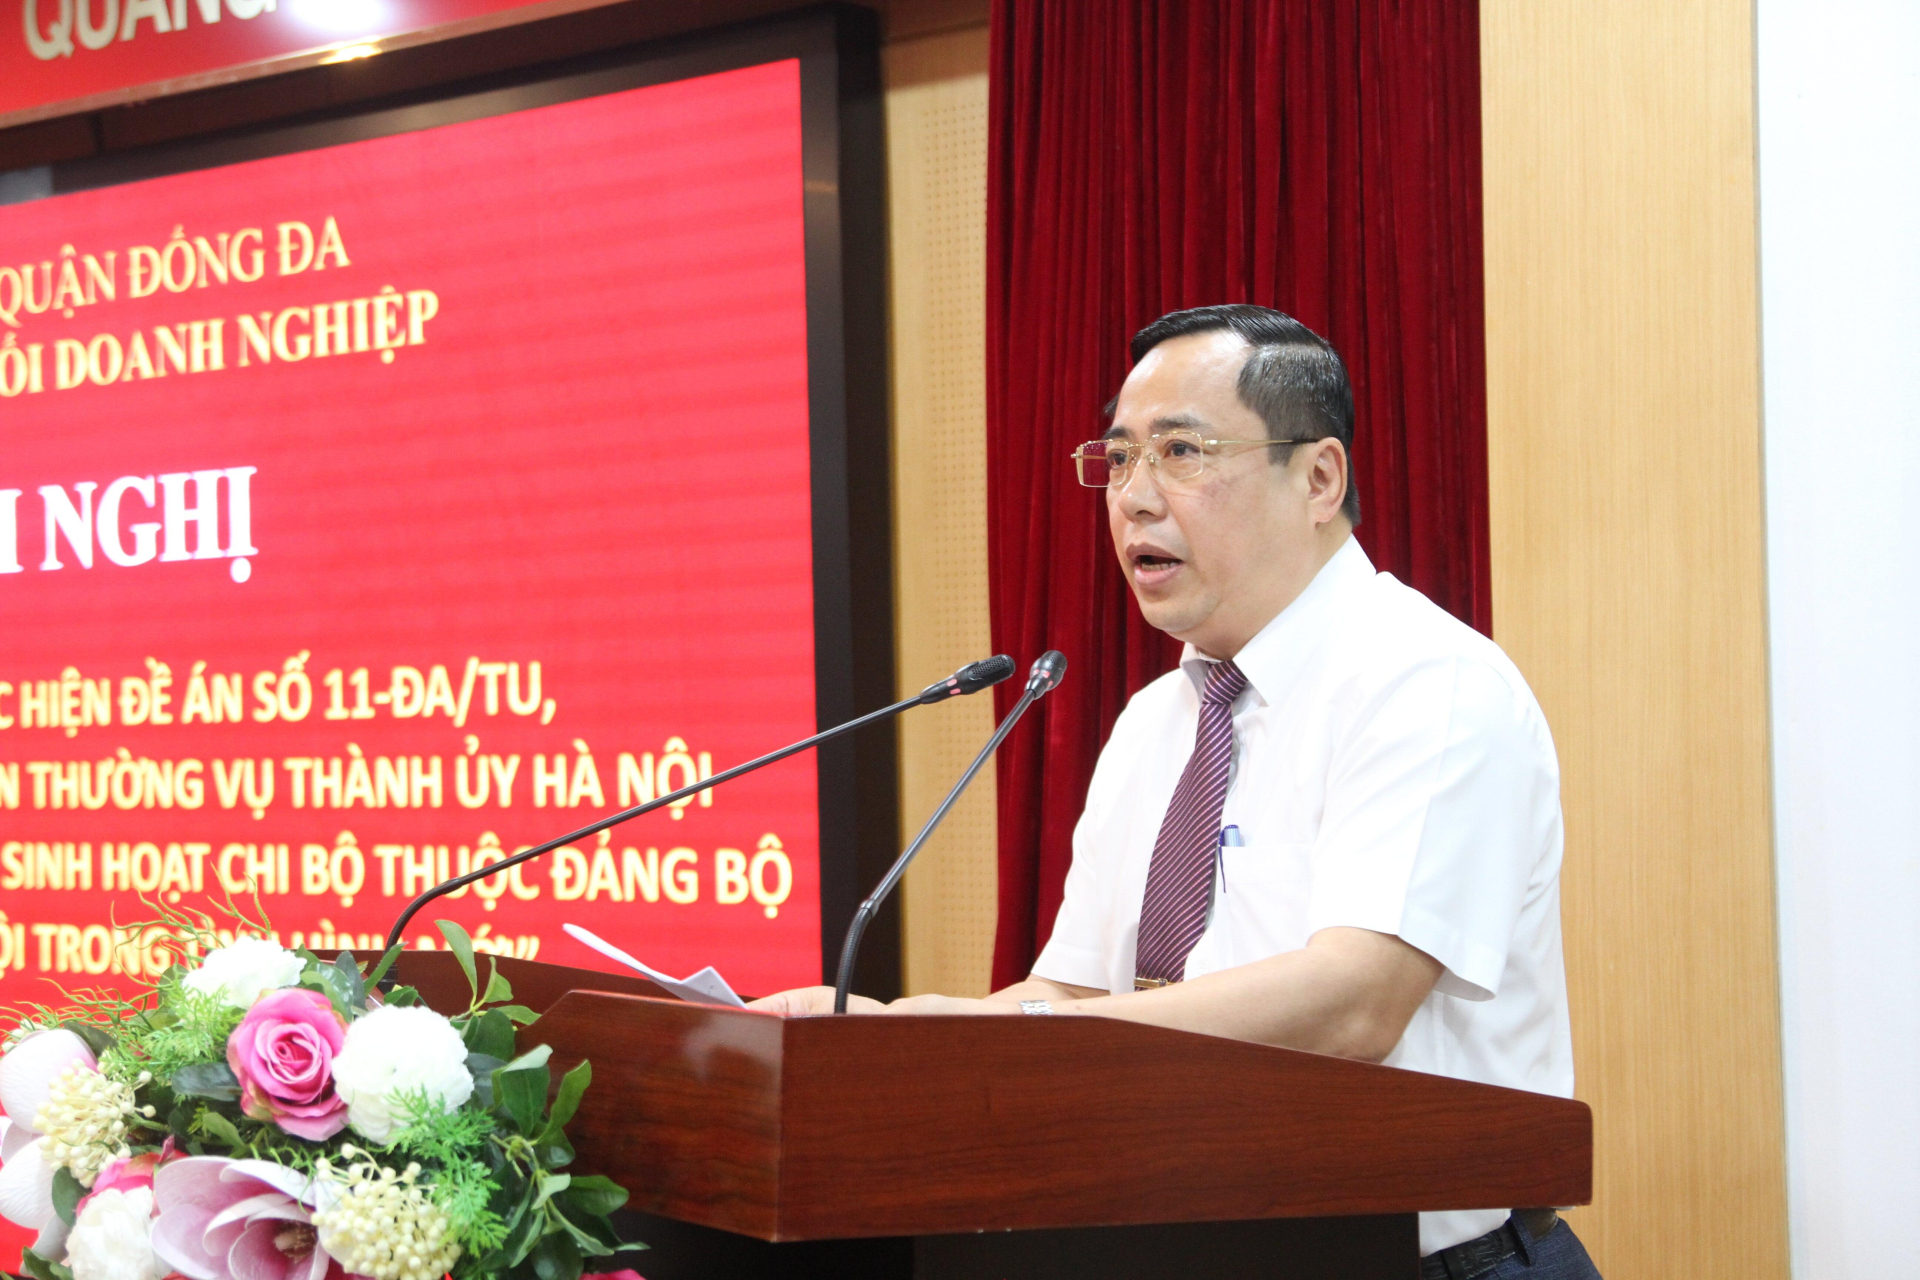 Đồng chí Nguyễn Văn Quang - Phó Bí thư, Chủ nhiệm Uỷ ban Kiểm tra Đảng bộ Khối Doanh nghiệp quận Đống Đa phát biểu tại hội nghị.